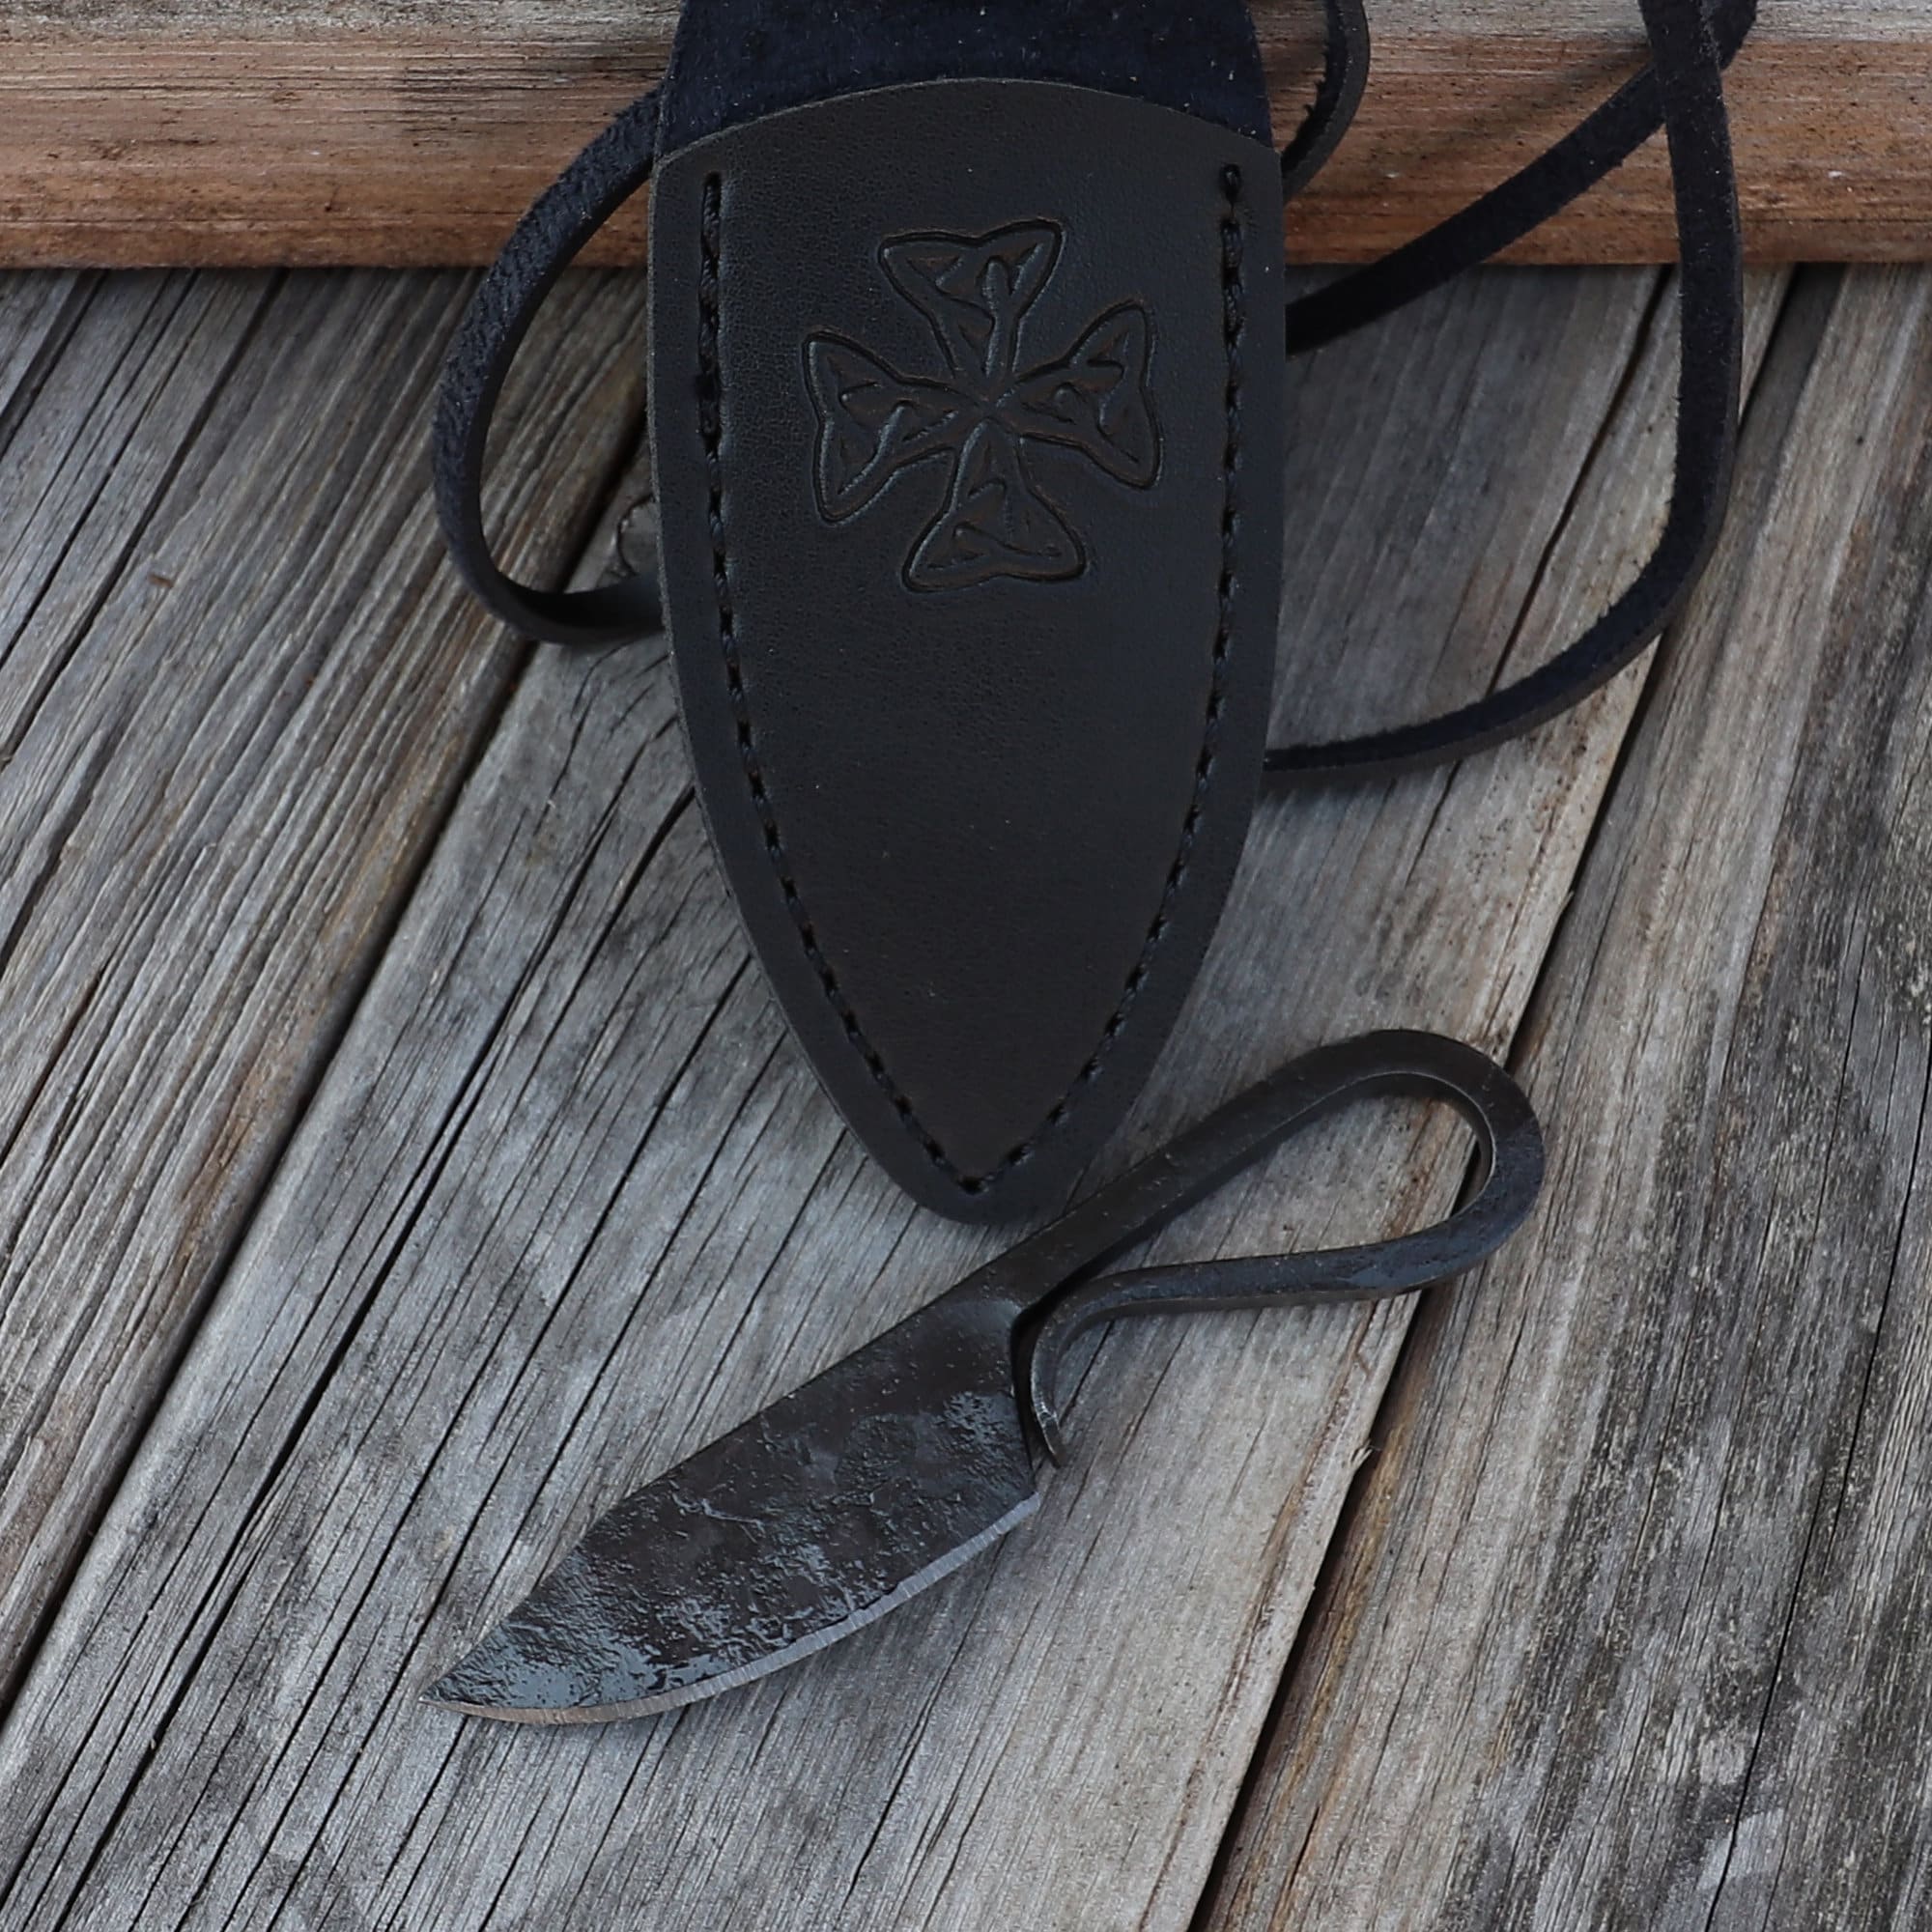 4 neck knife hand made beaded knife sheaths - Kentucky Leather